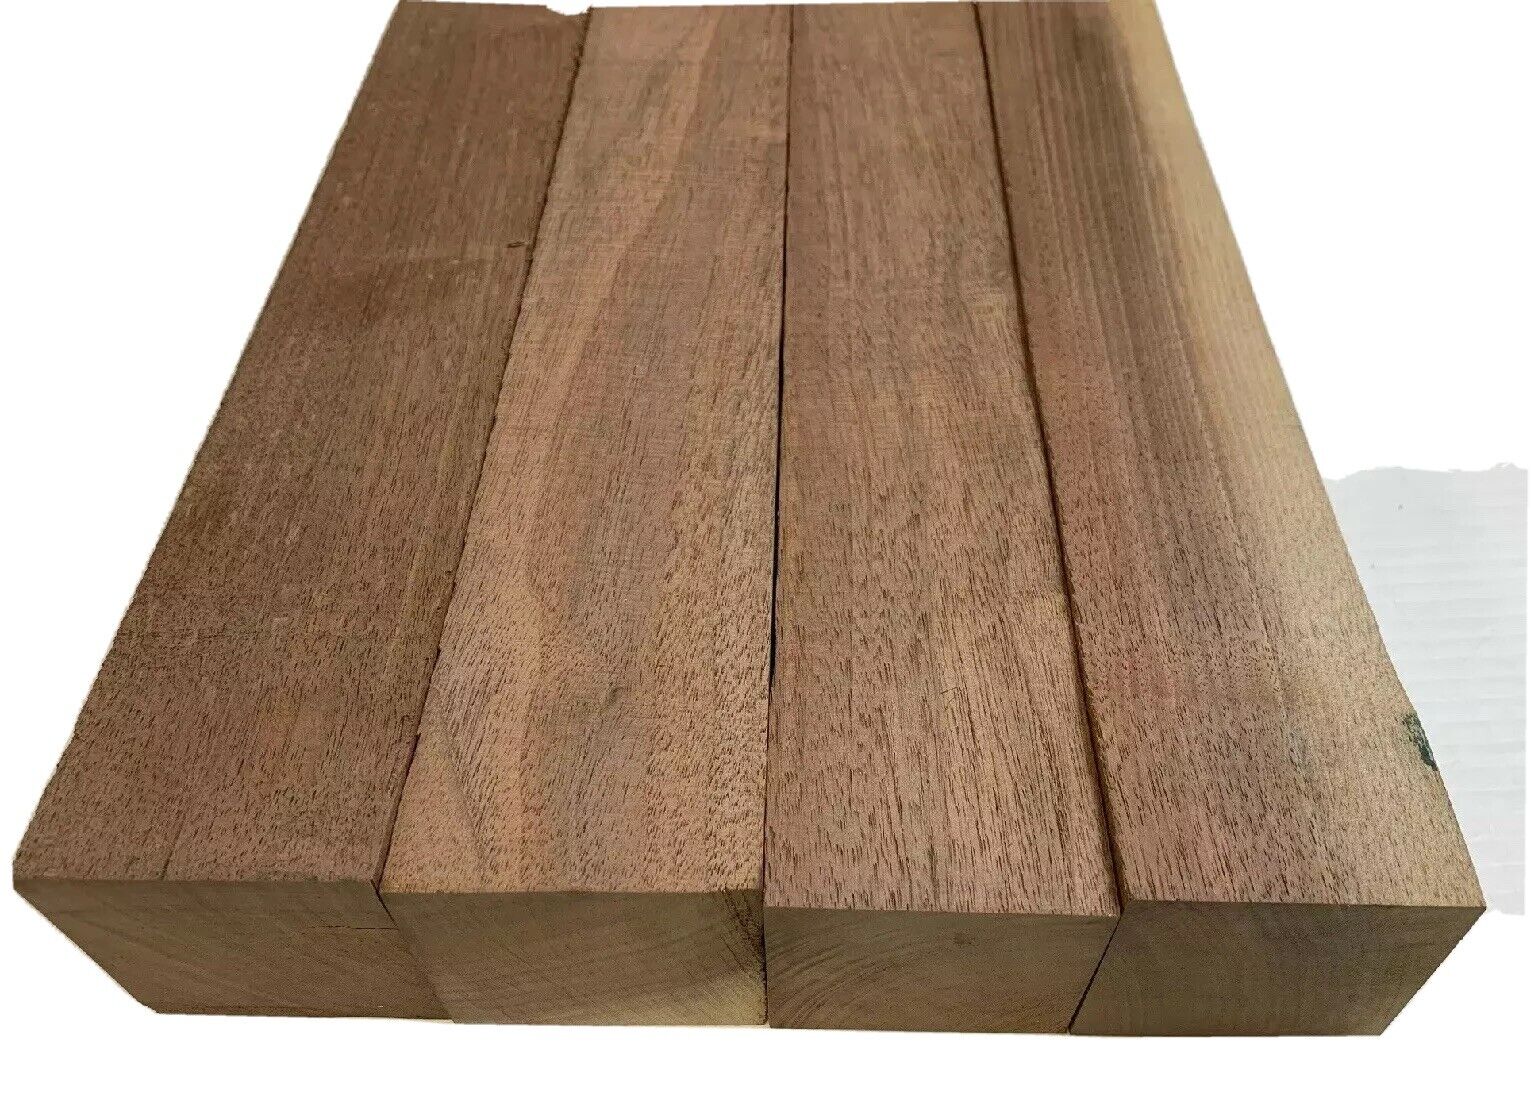 4 Pack Set,  Black Walnut Lumber Board, Turning Wood  - 2" x 2" x 12"  FREE SHIP EXOTIC WOOD ZONE Turning Wood Blanks